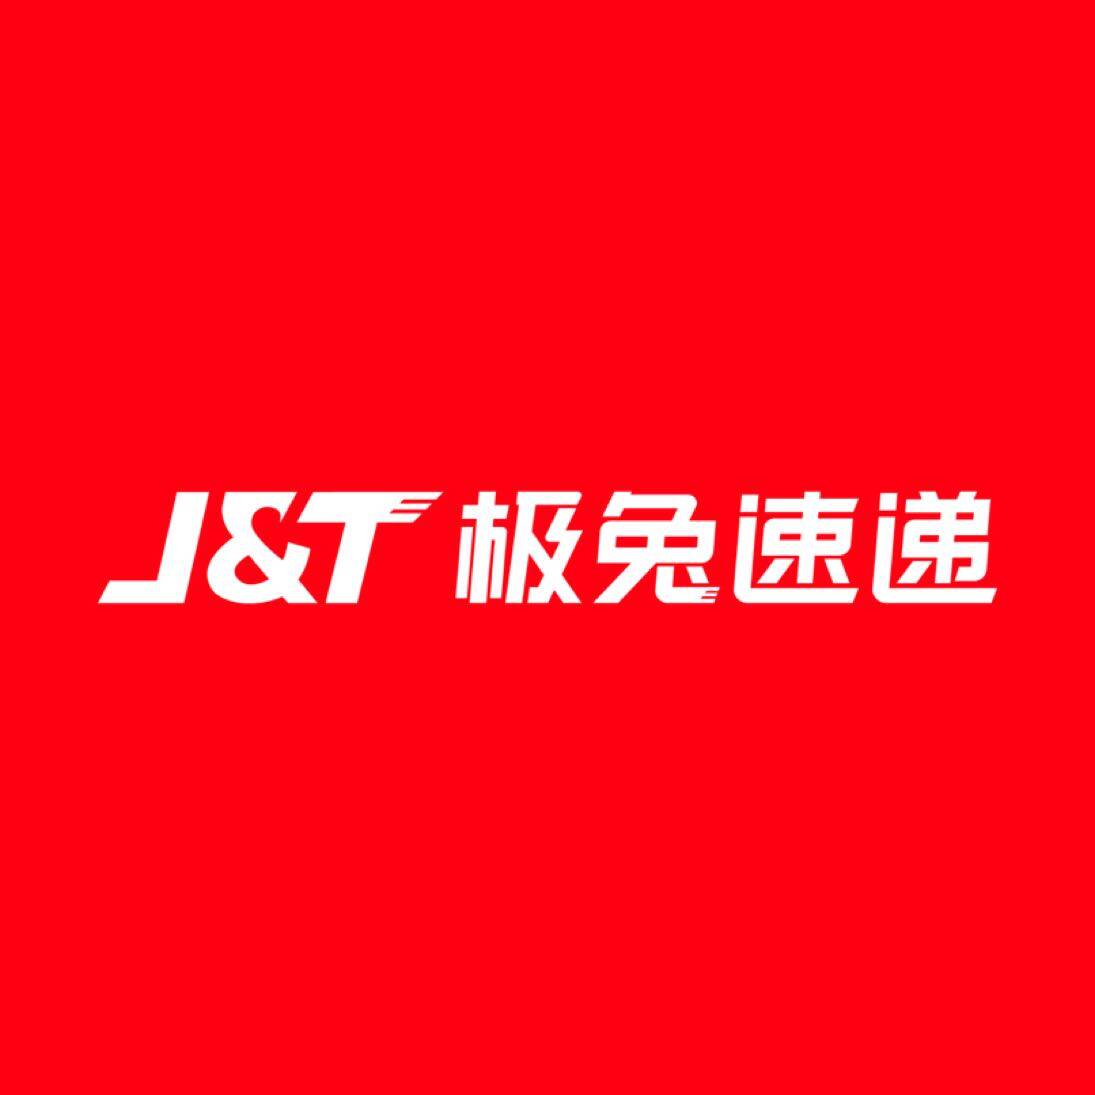 惠州极兔必达供应链管理有限公司logo